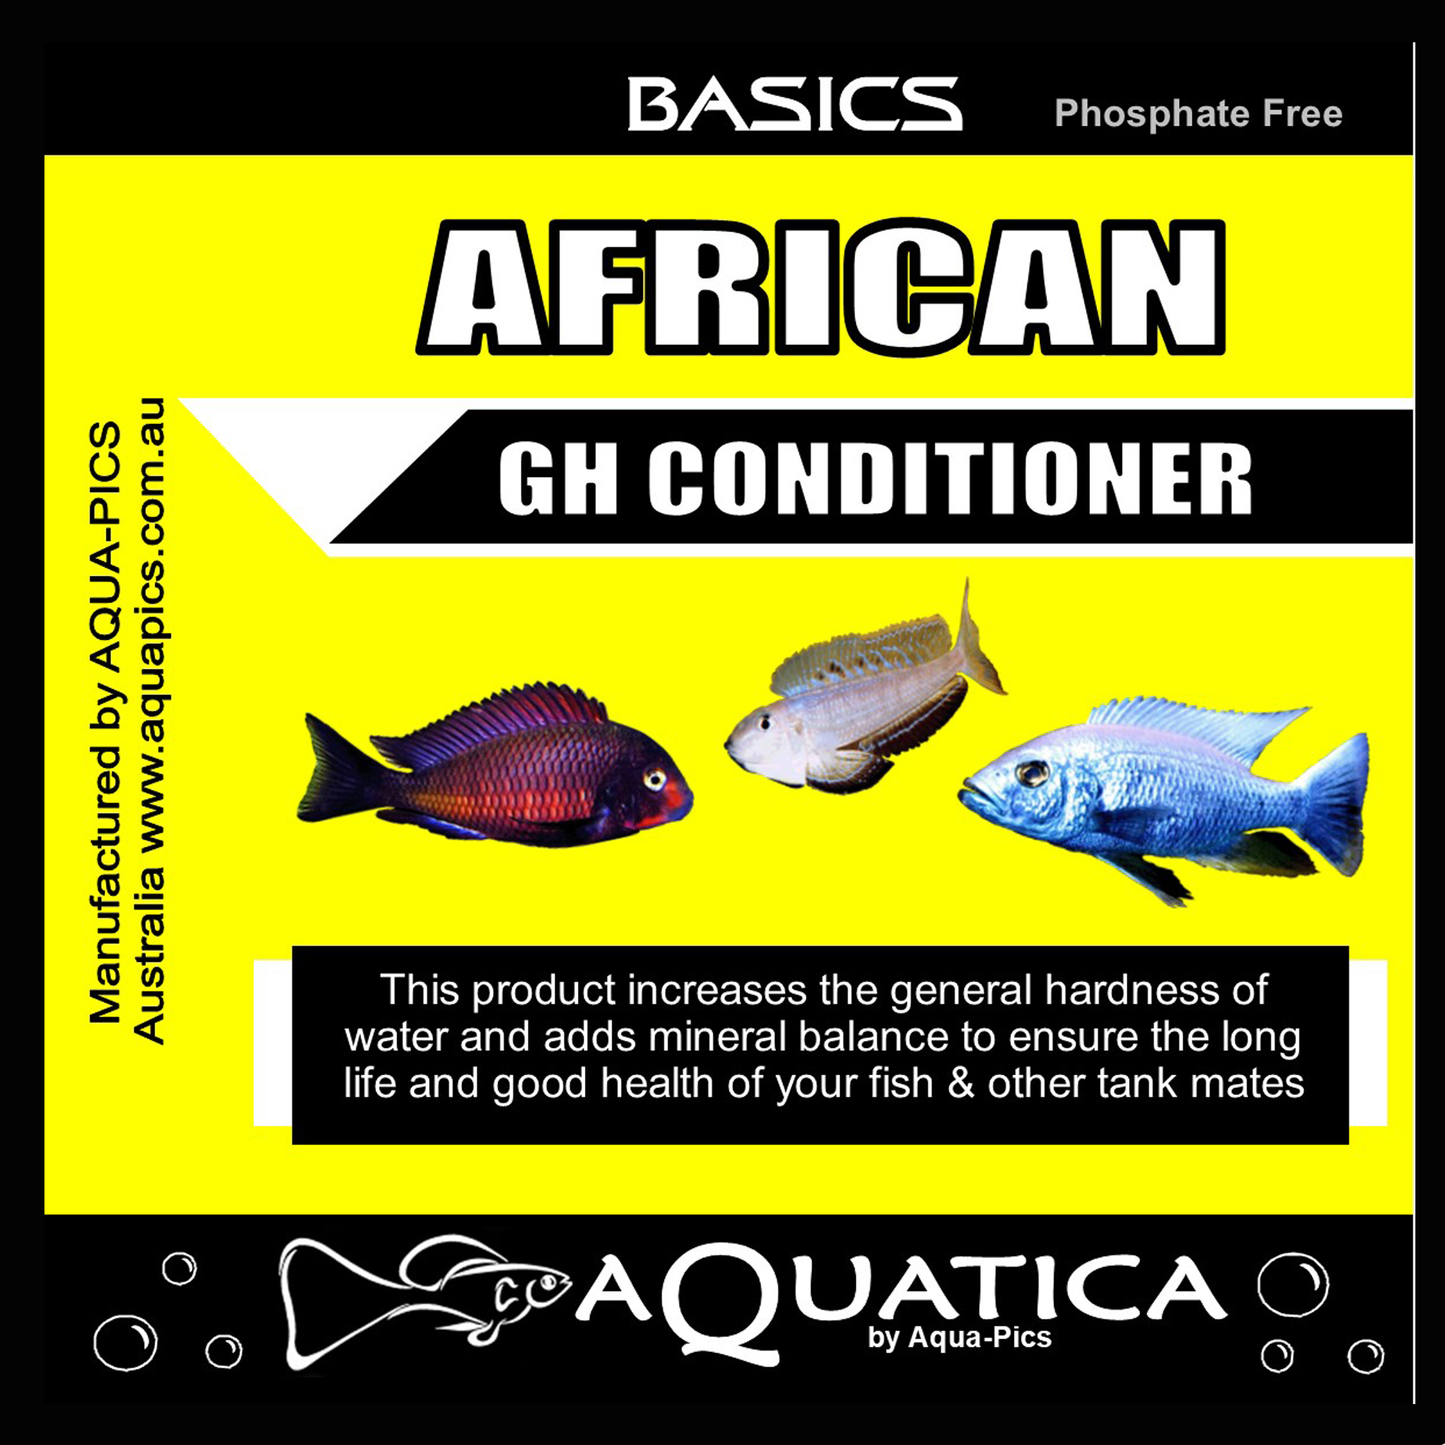 Aquatica Basics African GH Conditioner 4.5kg bag